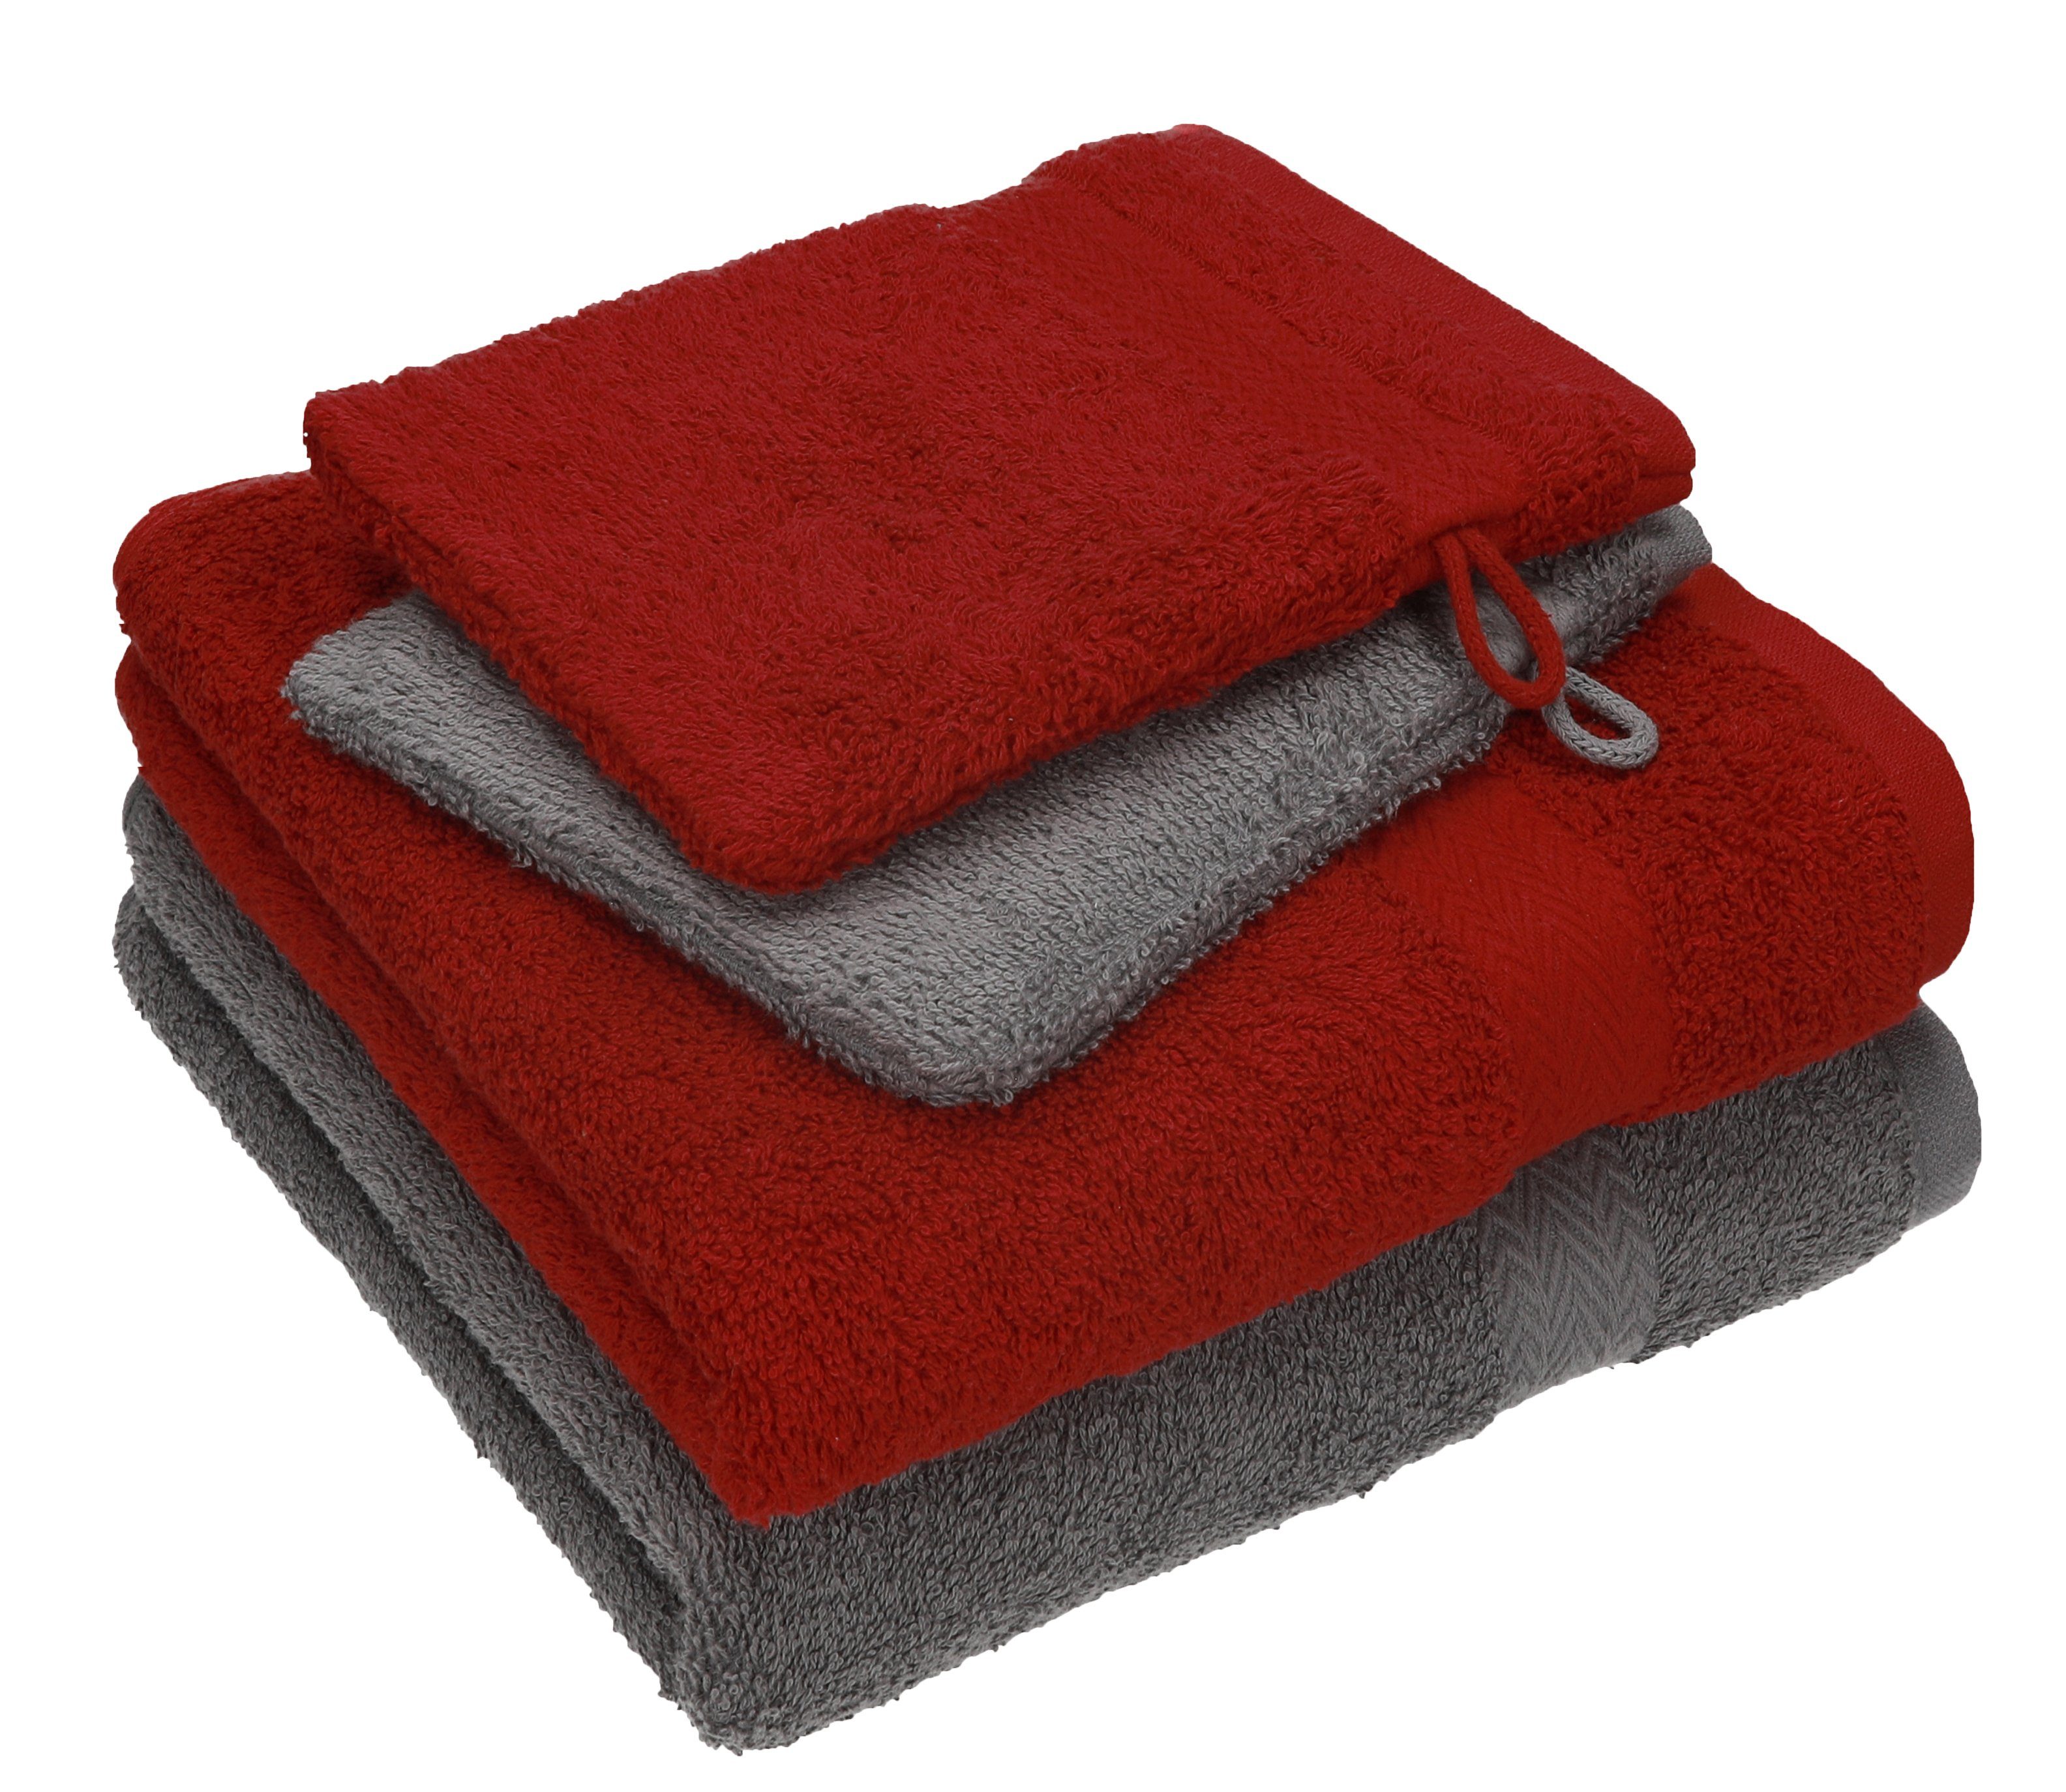 Betz Handtuch Set 4 TLG. Handtuch Set Happy Pack 100% Baumwolle 2 Handtücher 2 Waschhandschuhe, 100% Baumwolle anthrazit grau - rubinrot | Handtuch-Sets